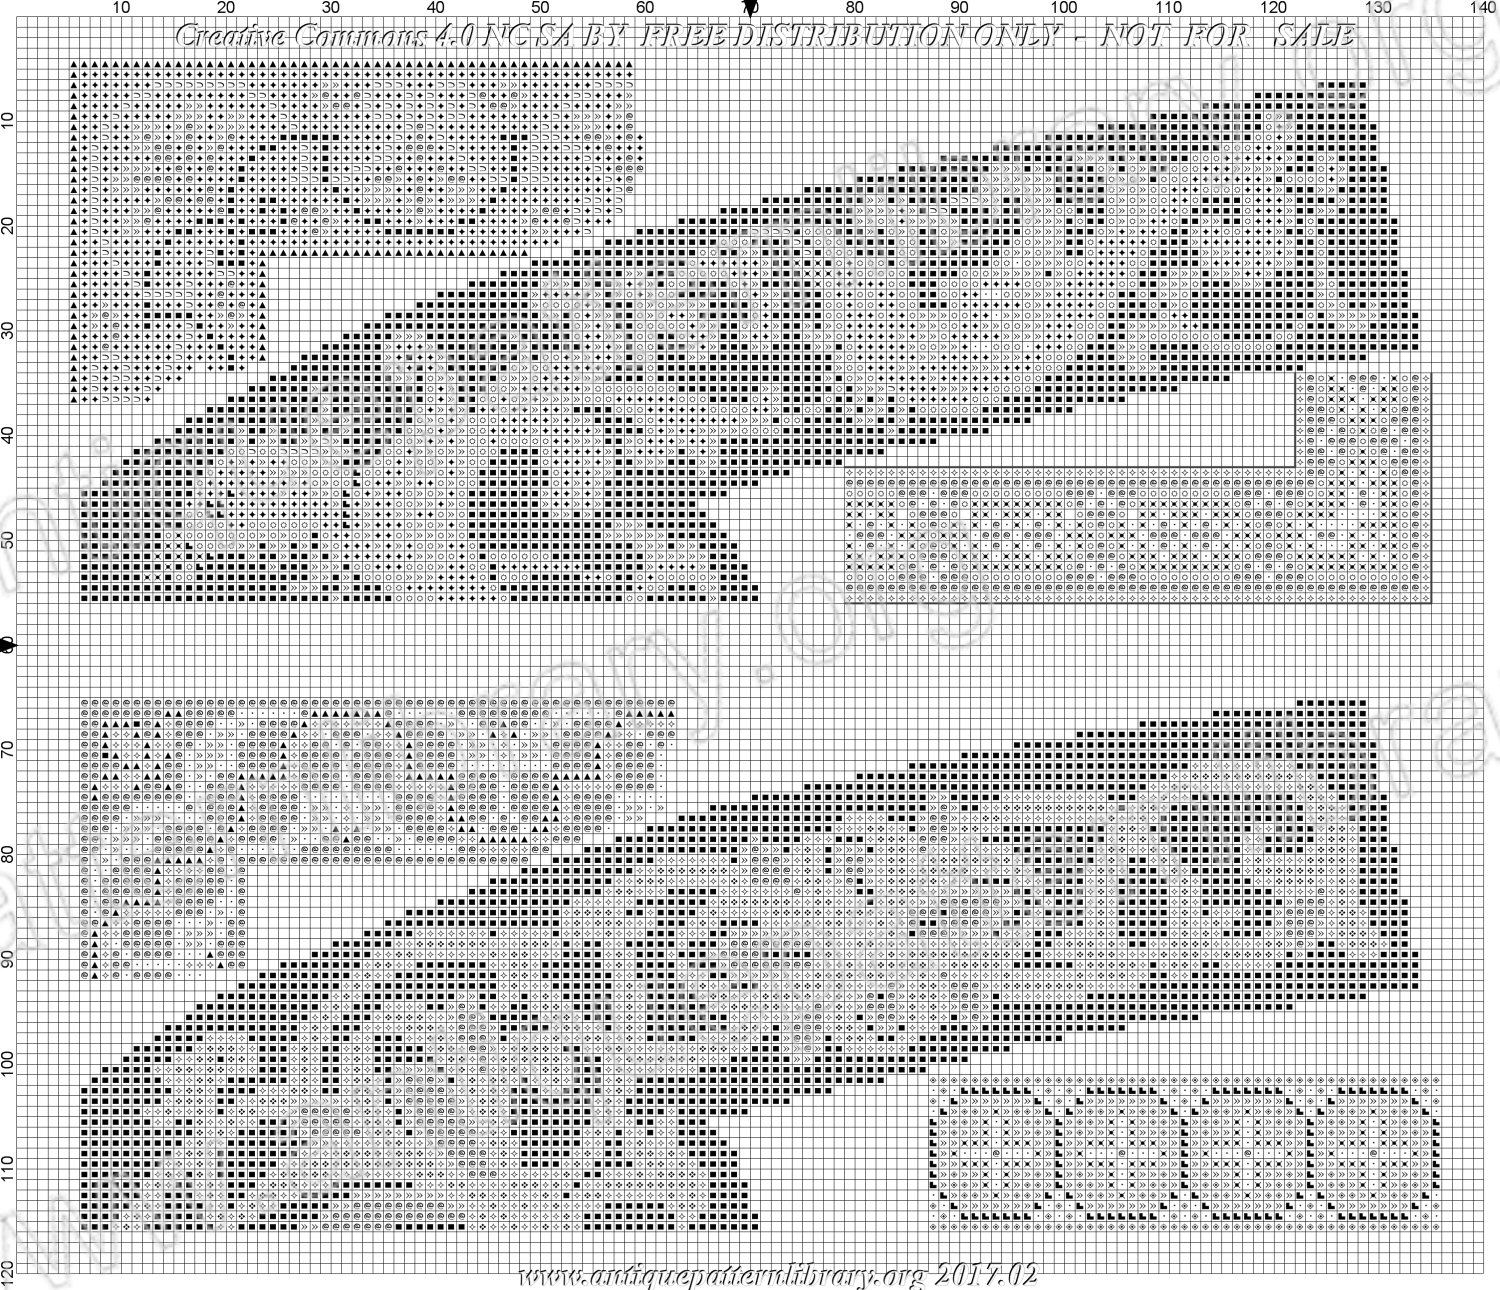 H-EU001 Embroidery patterns - Dessins de broderie - Neueste Stickvorlagen